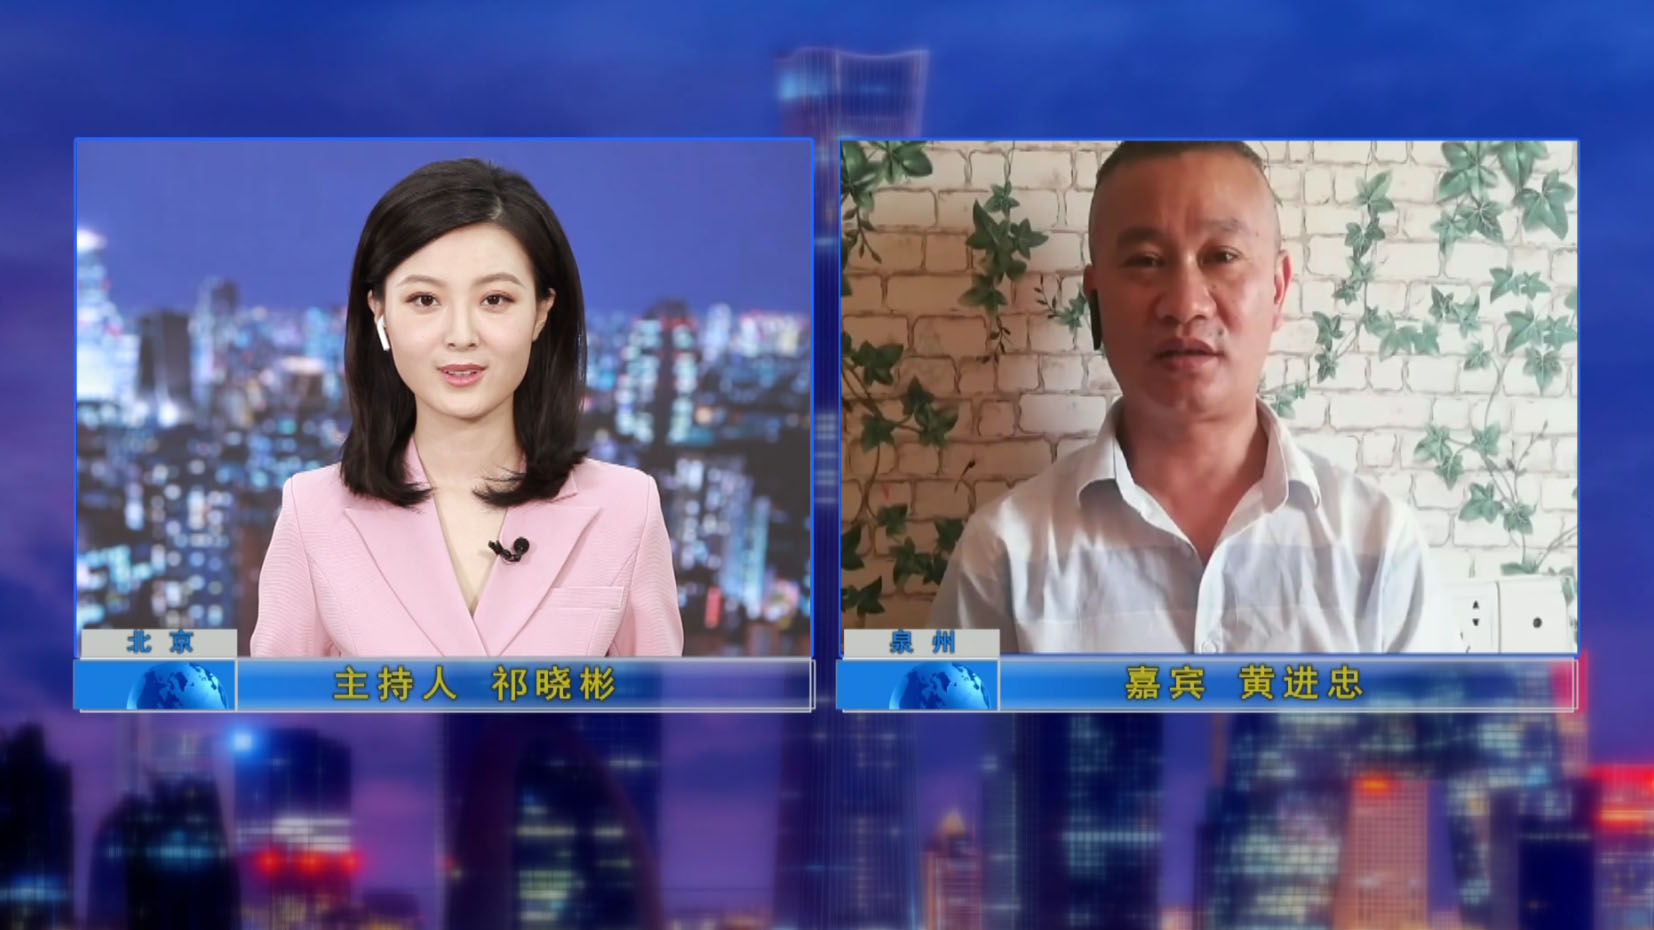 تمت مقابلة المدير العام من قبل برنامج التلفزيون "الائتمان الصين"